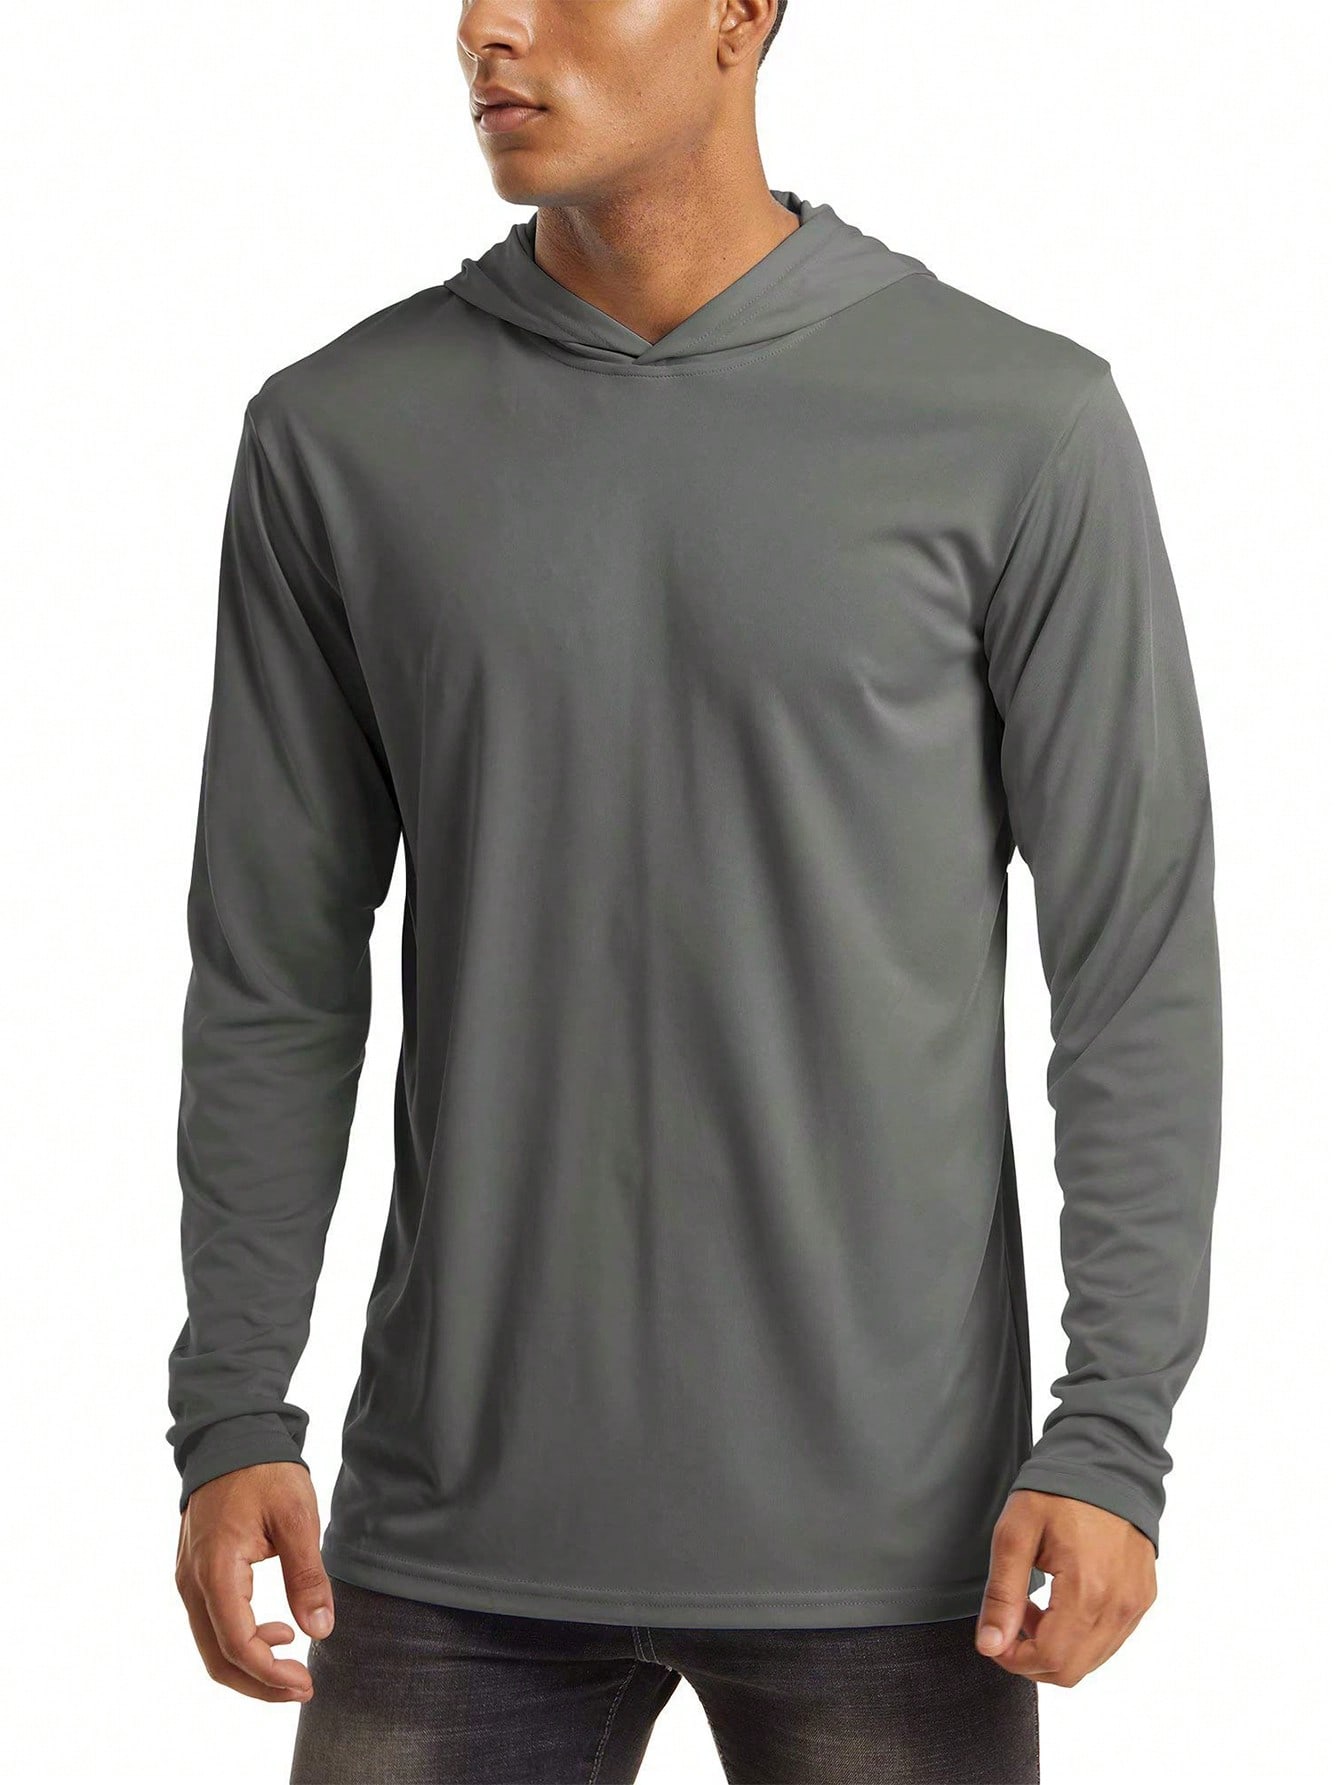 NASBING Мужская быстросохнущая спортивная футболка с капюшоном, темно-серый